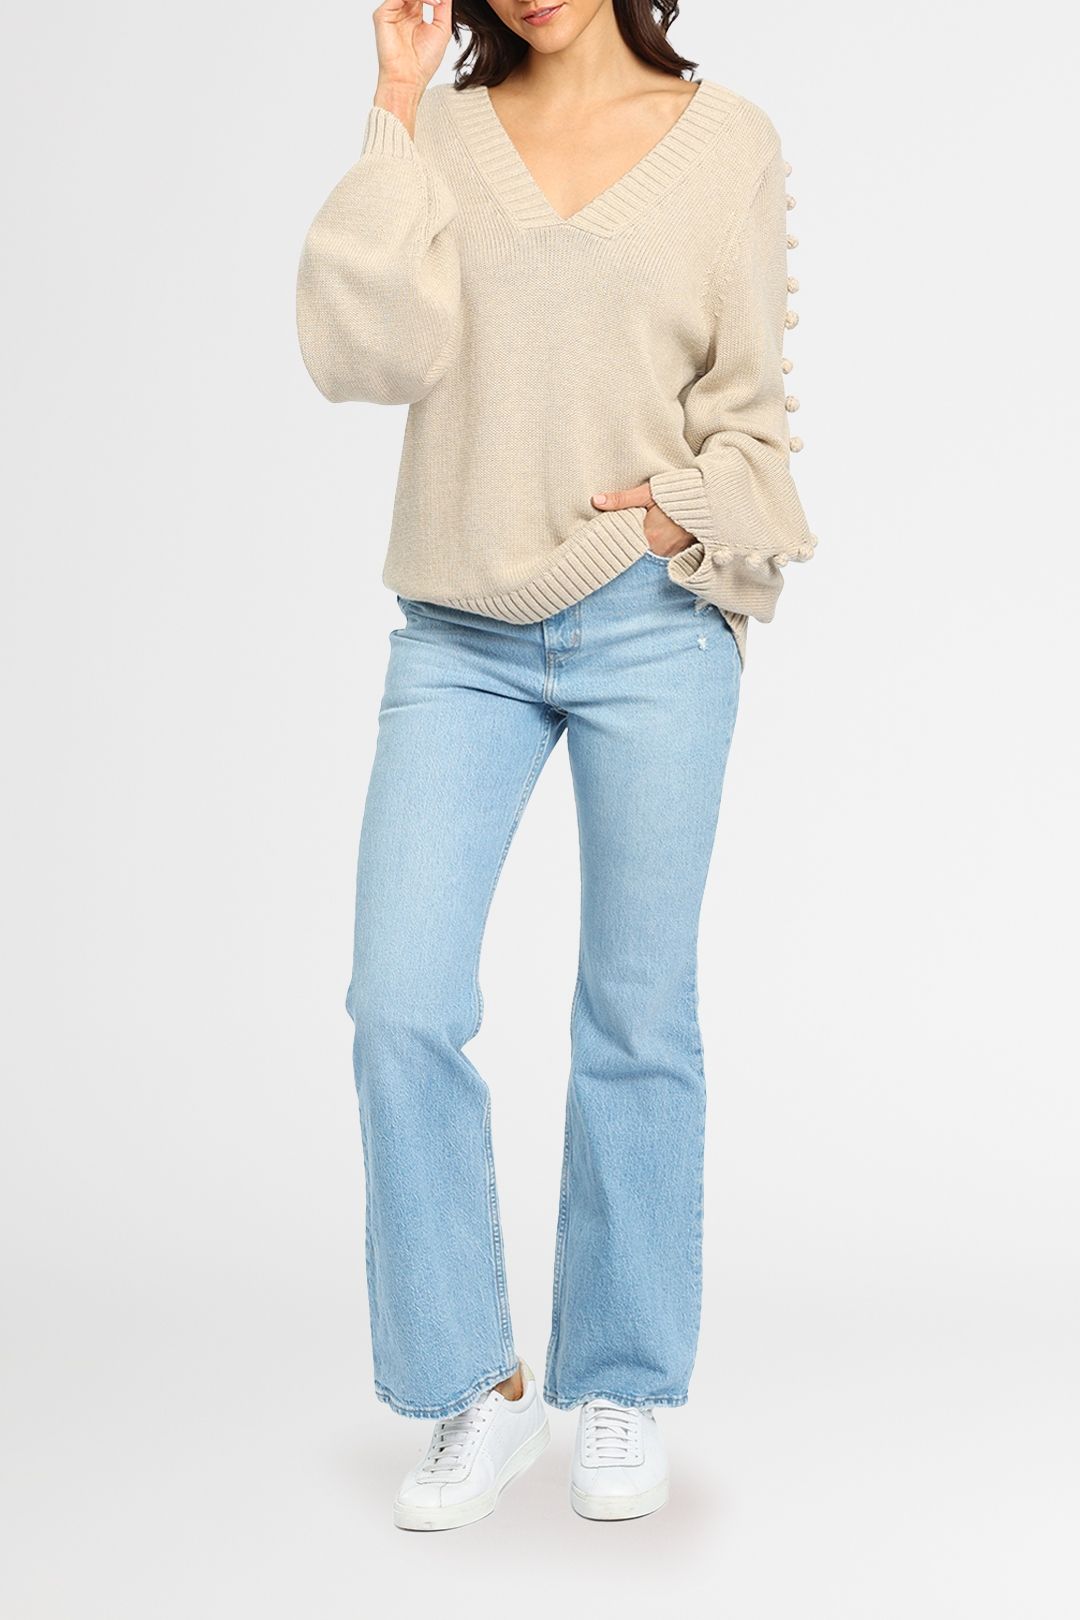 Joslin Paige Cotton Cashmere Sweater